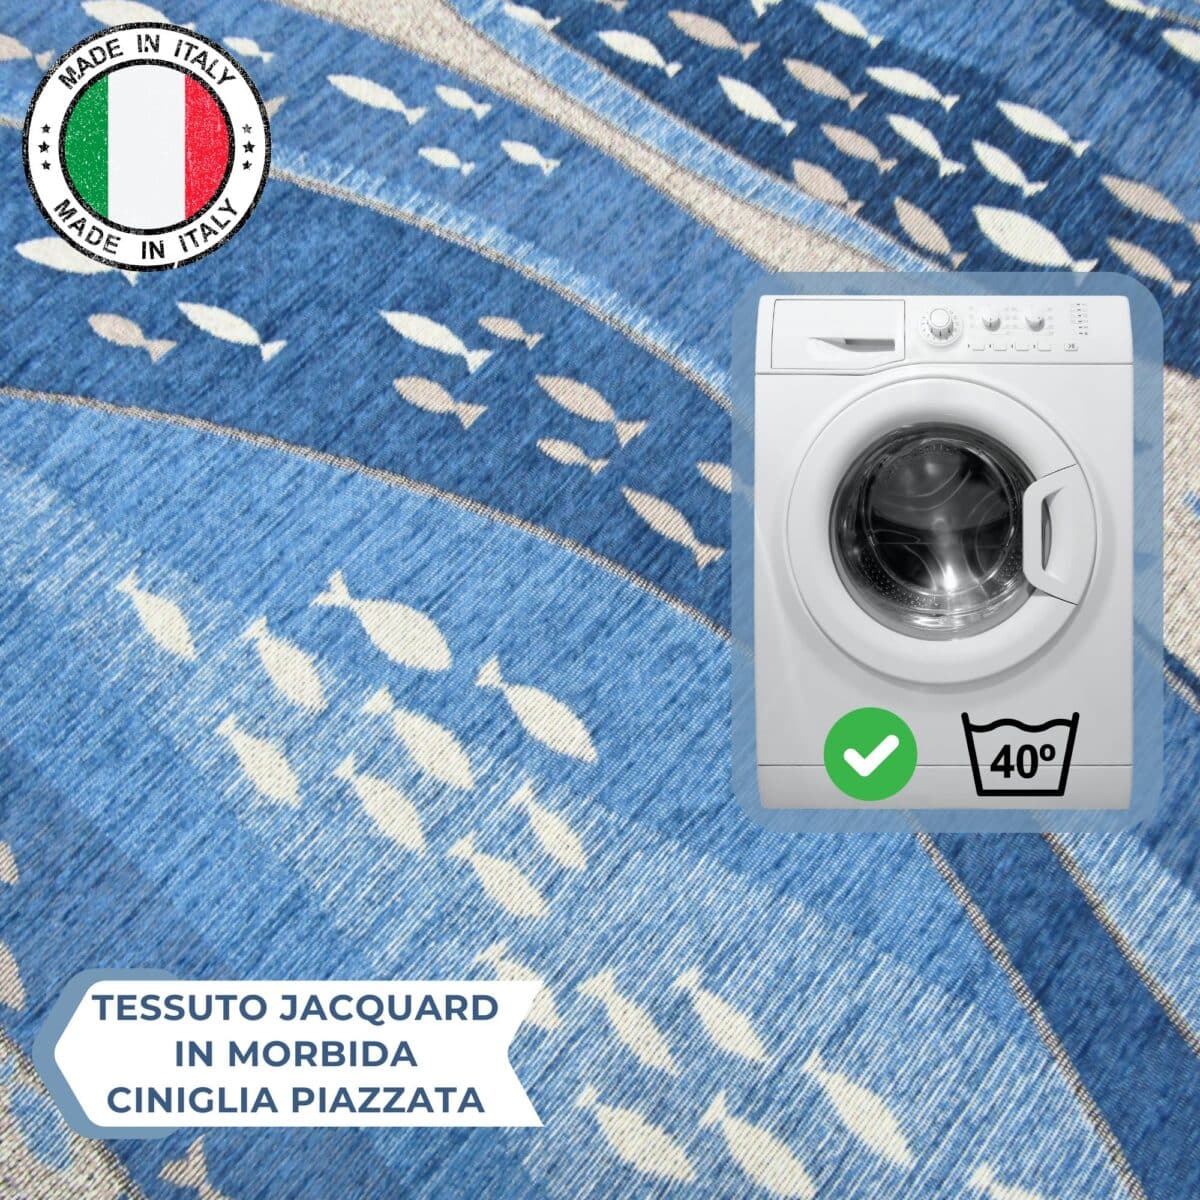 tappeto-pesciolini-mare-jacquard-ciniglia-made-in-italy-antiscivolo-antisfilo-multiuso-cucina-camere-bagno-lavabile-dettagli